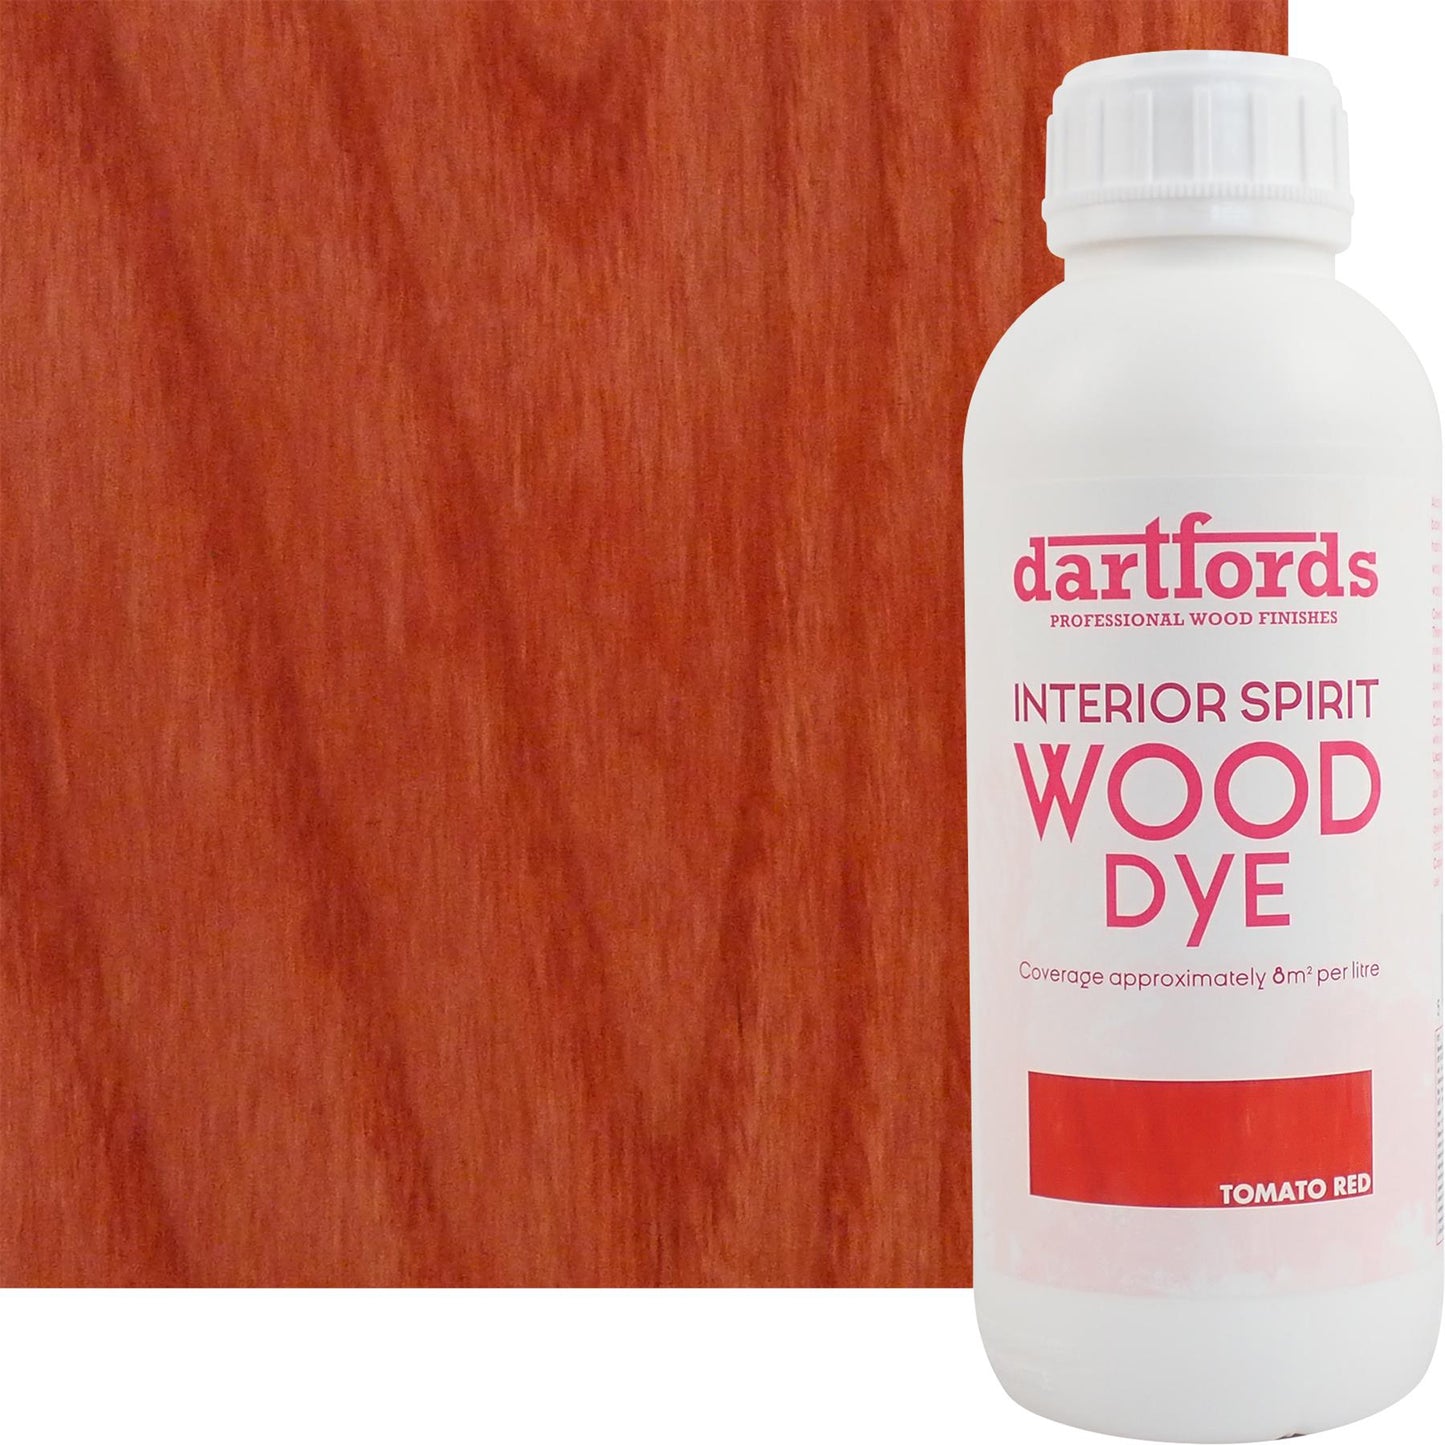 dartfords Tomato Red Interior Spirit Based Wood Dye - 1 litre Tin